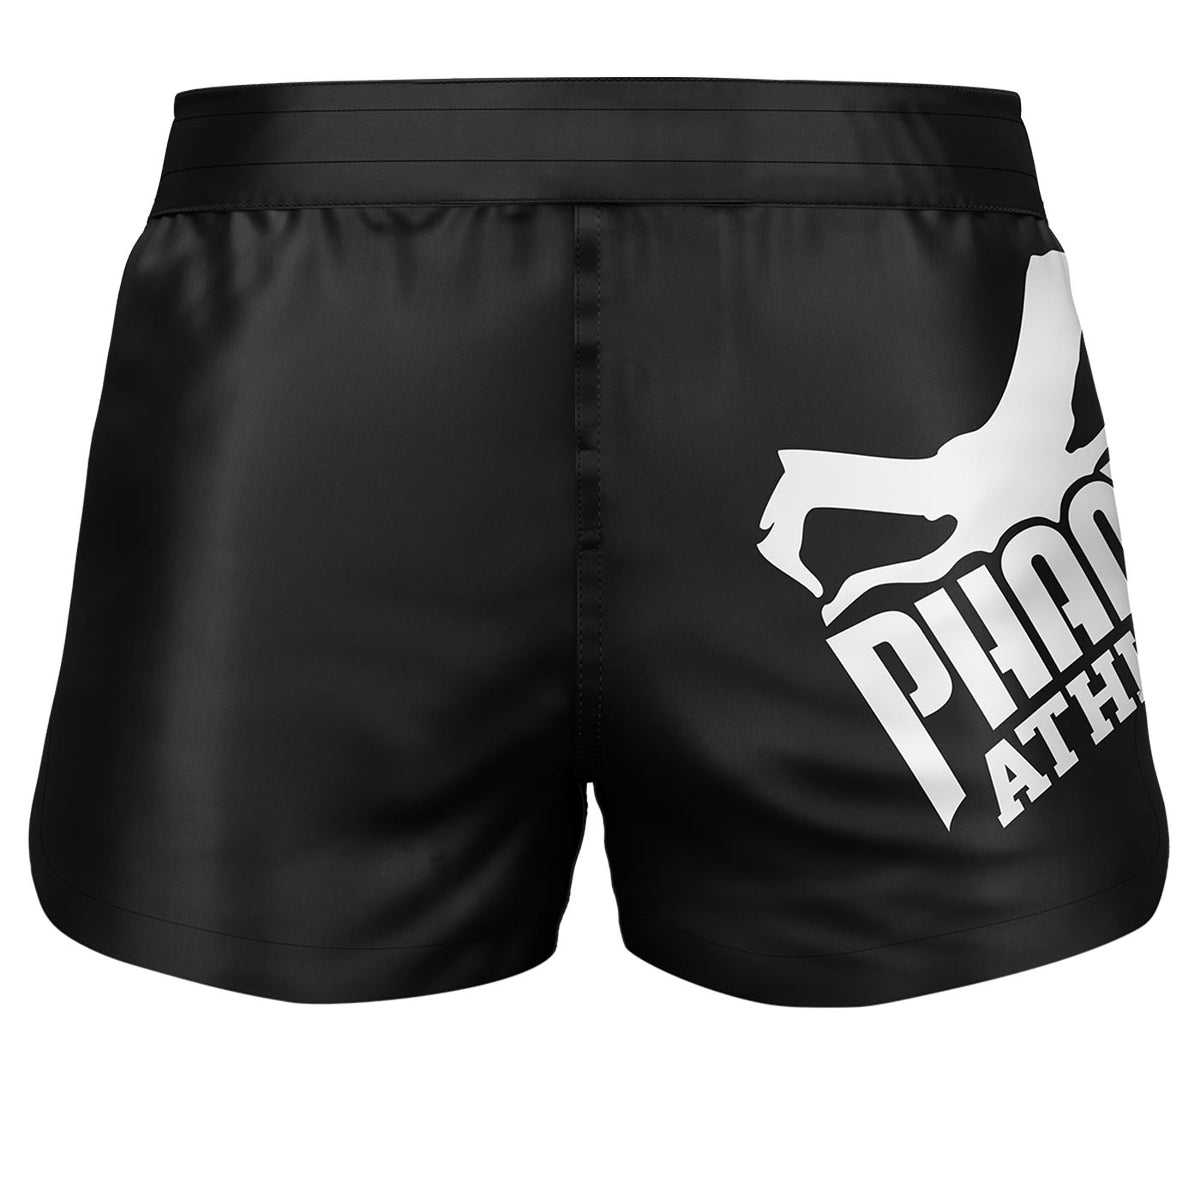 Phantom Fightshorts Fusión 2en1. Shorts definitivos para tus artes marciales. Ideal para MMA, Muay Thai, BJJ, lucha libre y más. En diseño negro con gran logo Phantom .